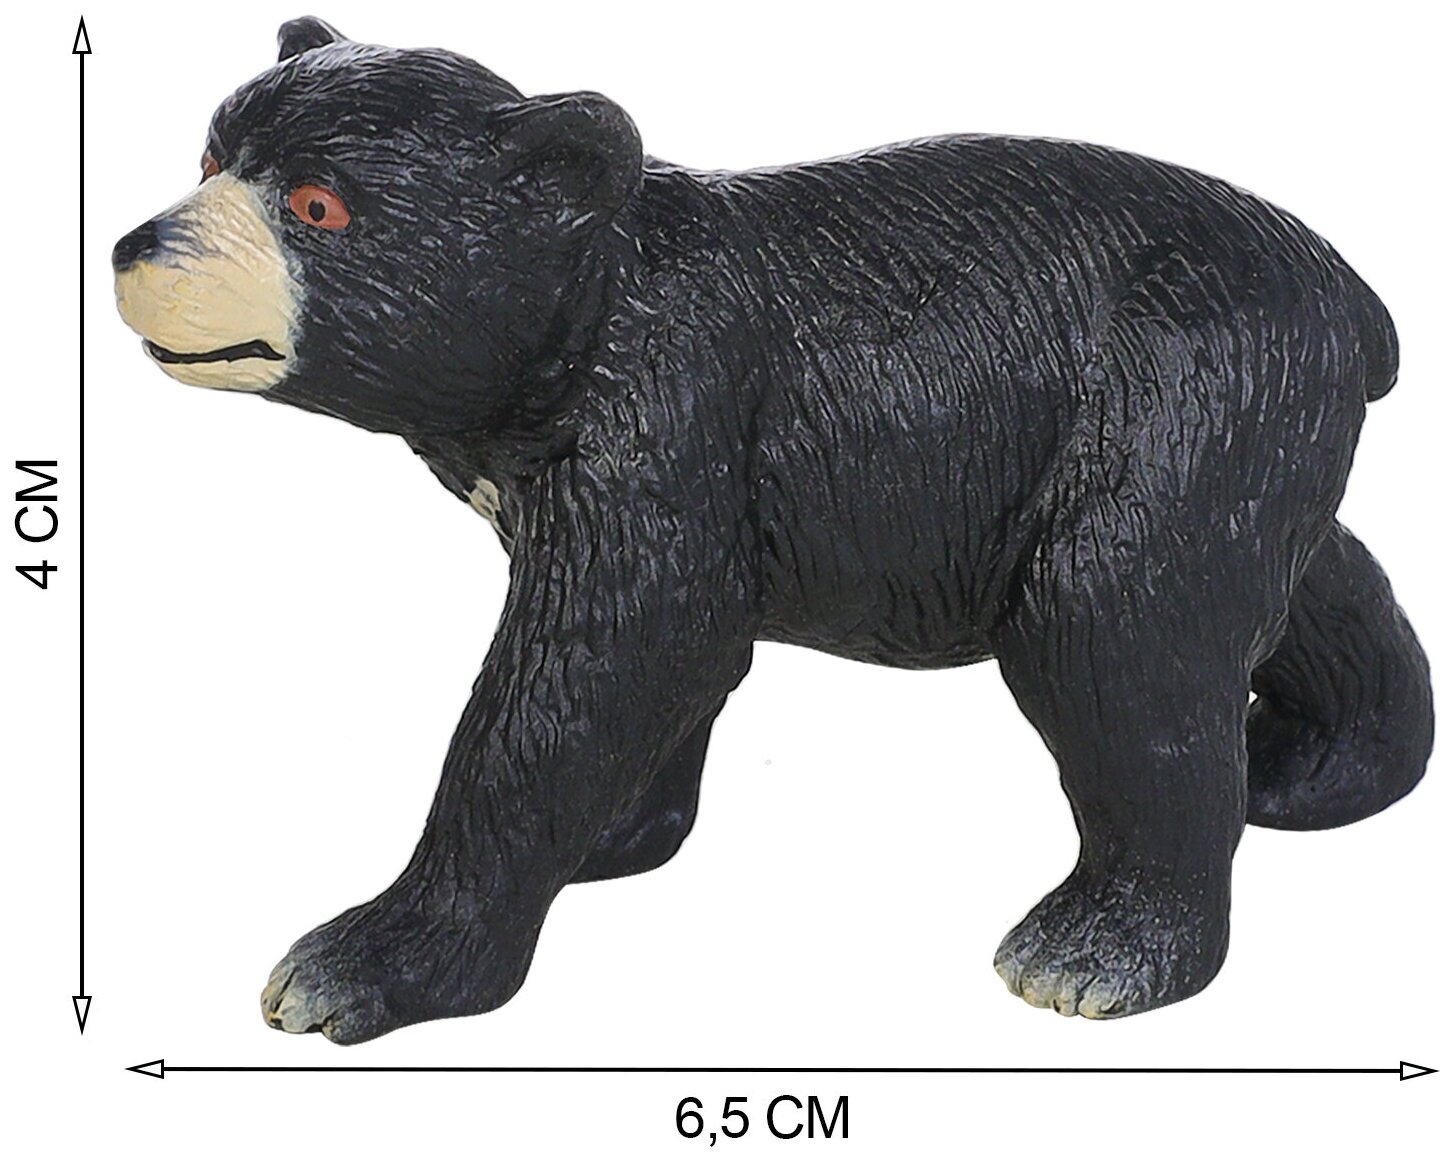 Набор фигурок животных серии "Мир диких животных": Семья гималайских медведей, 2 предмета